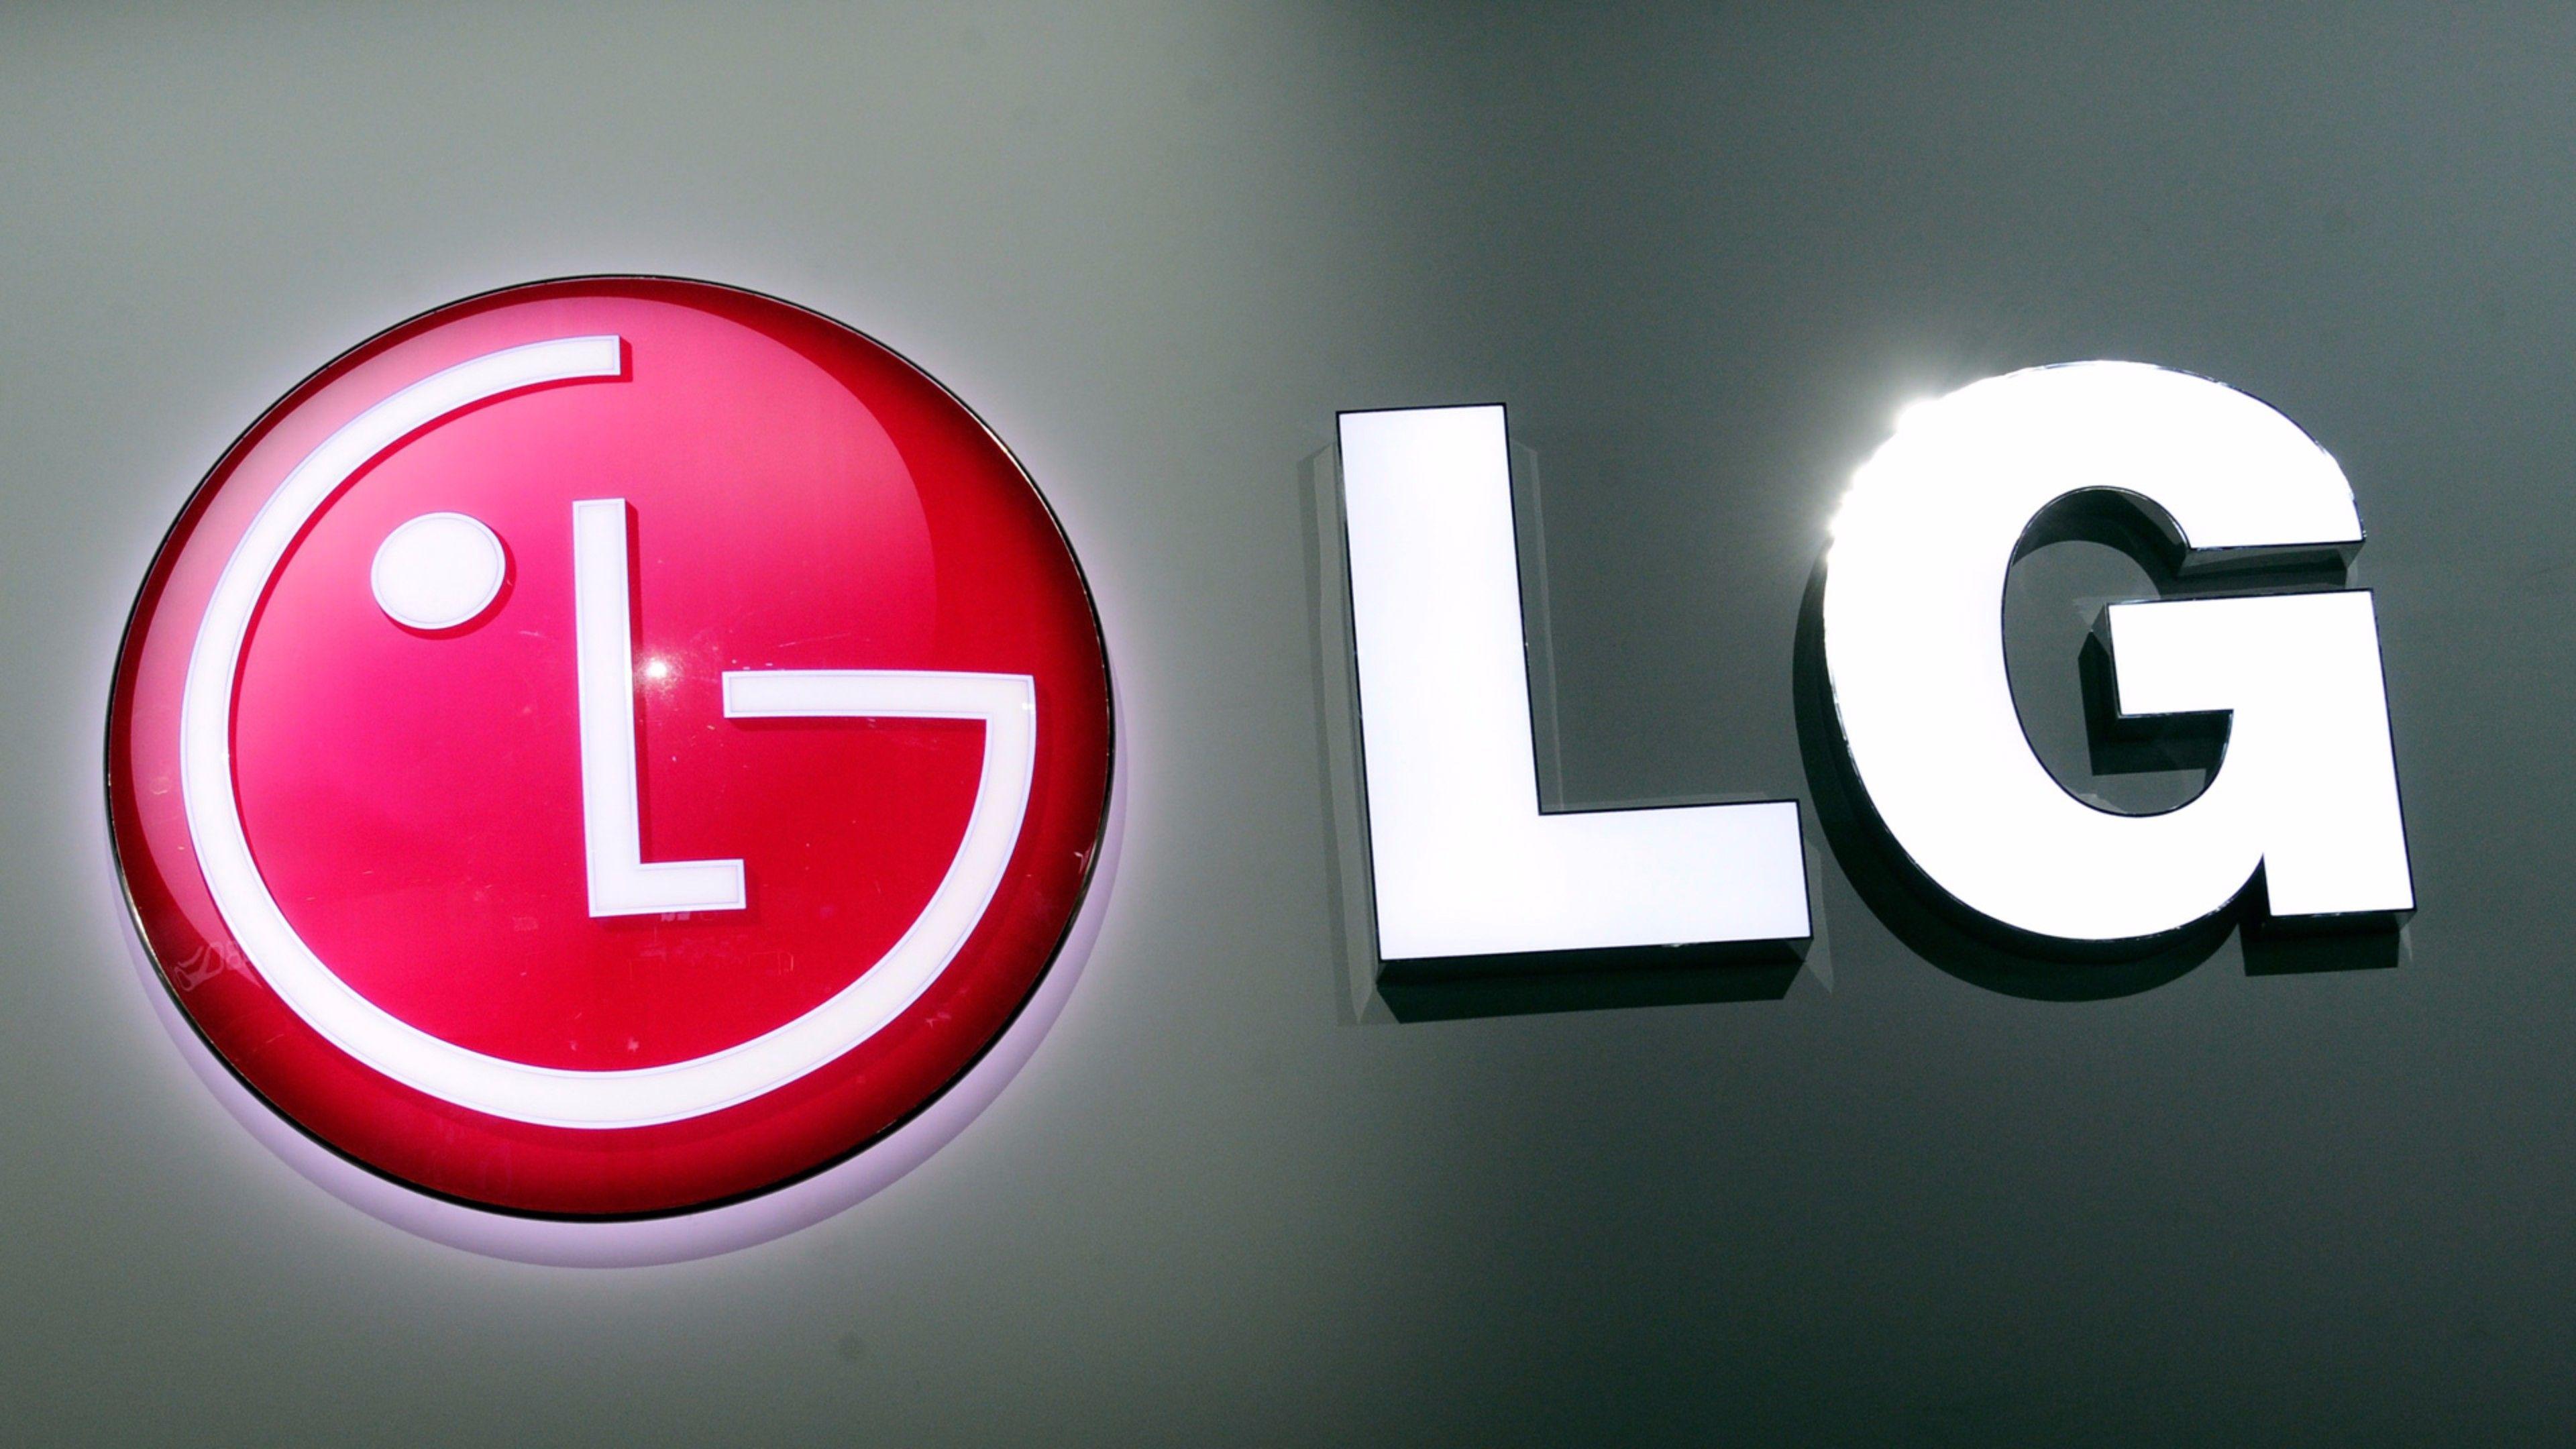 Cool LG Logo 4K Wallpapers